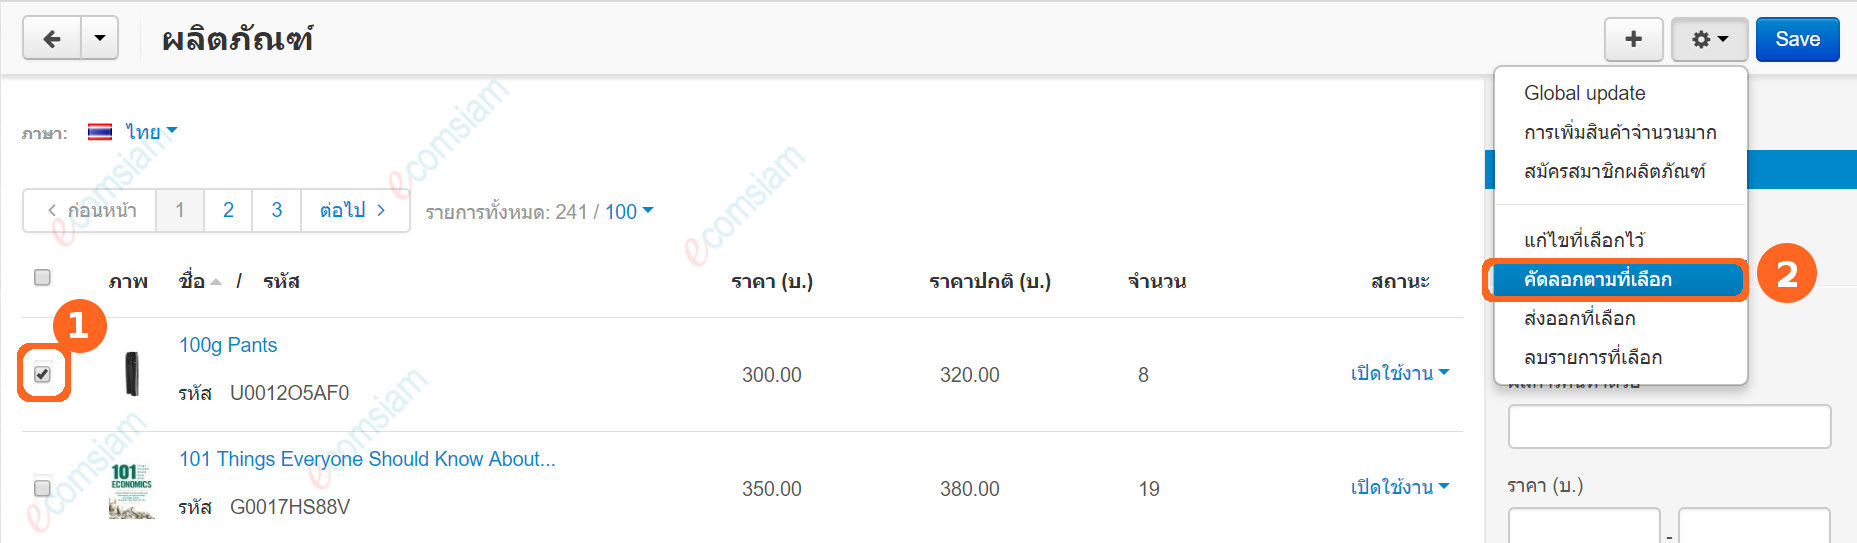 เว็บไซต์สำเร็จรูปไทย - คู่มือร้านออนไลน์ - ผลิตภัณฑ์ โคลนหรือคัดลอกผลิตภัณฑ์